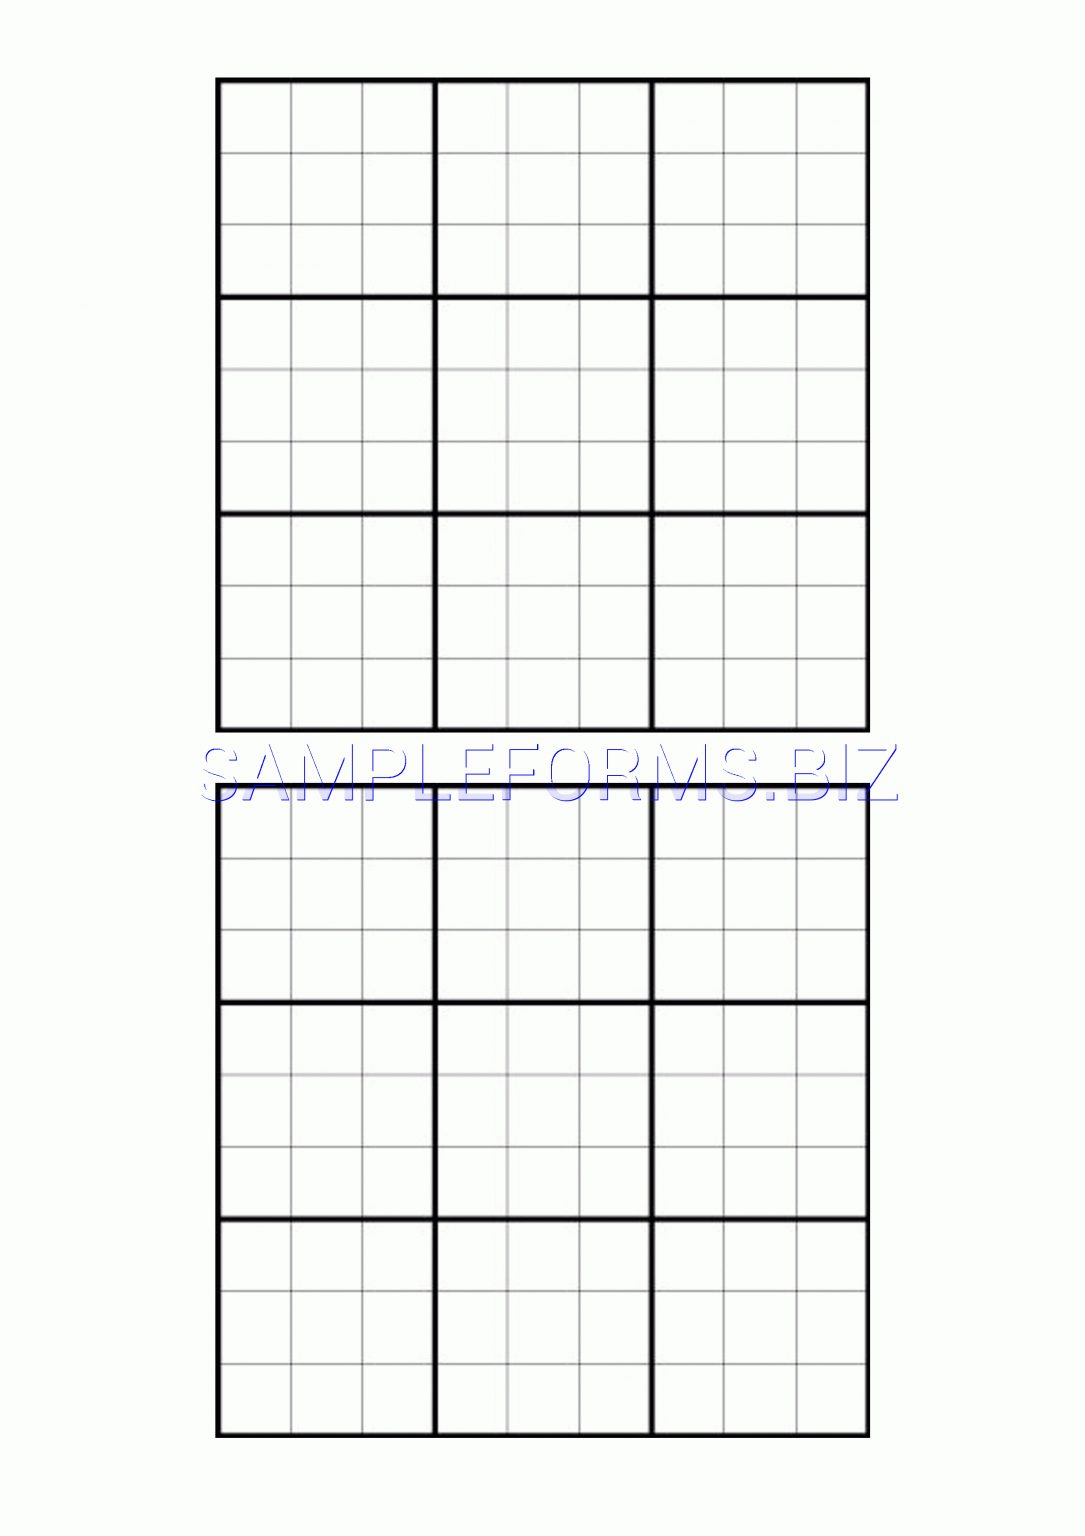 blank sudoku grid to fill in